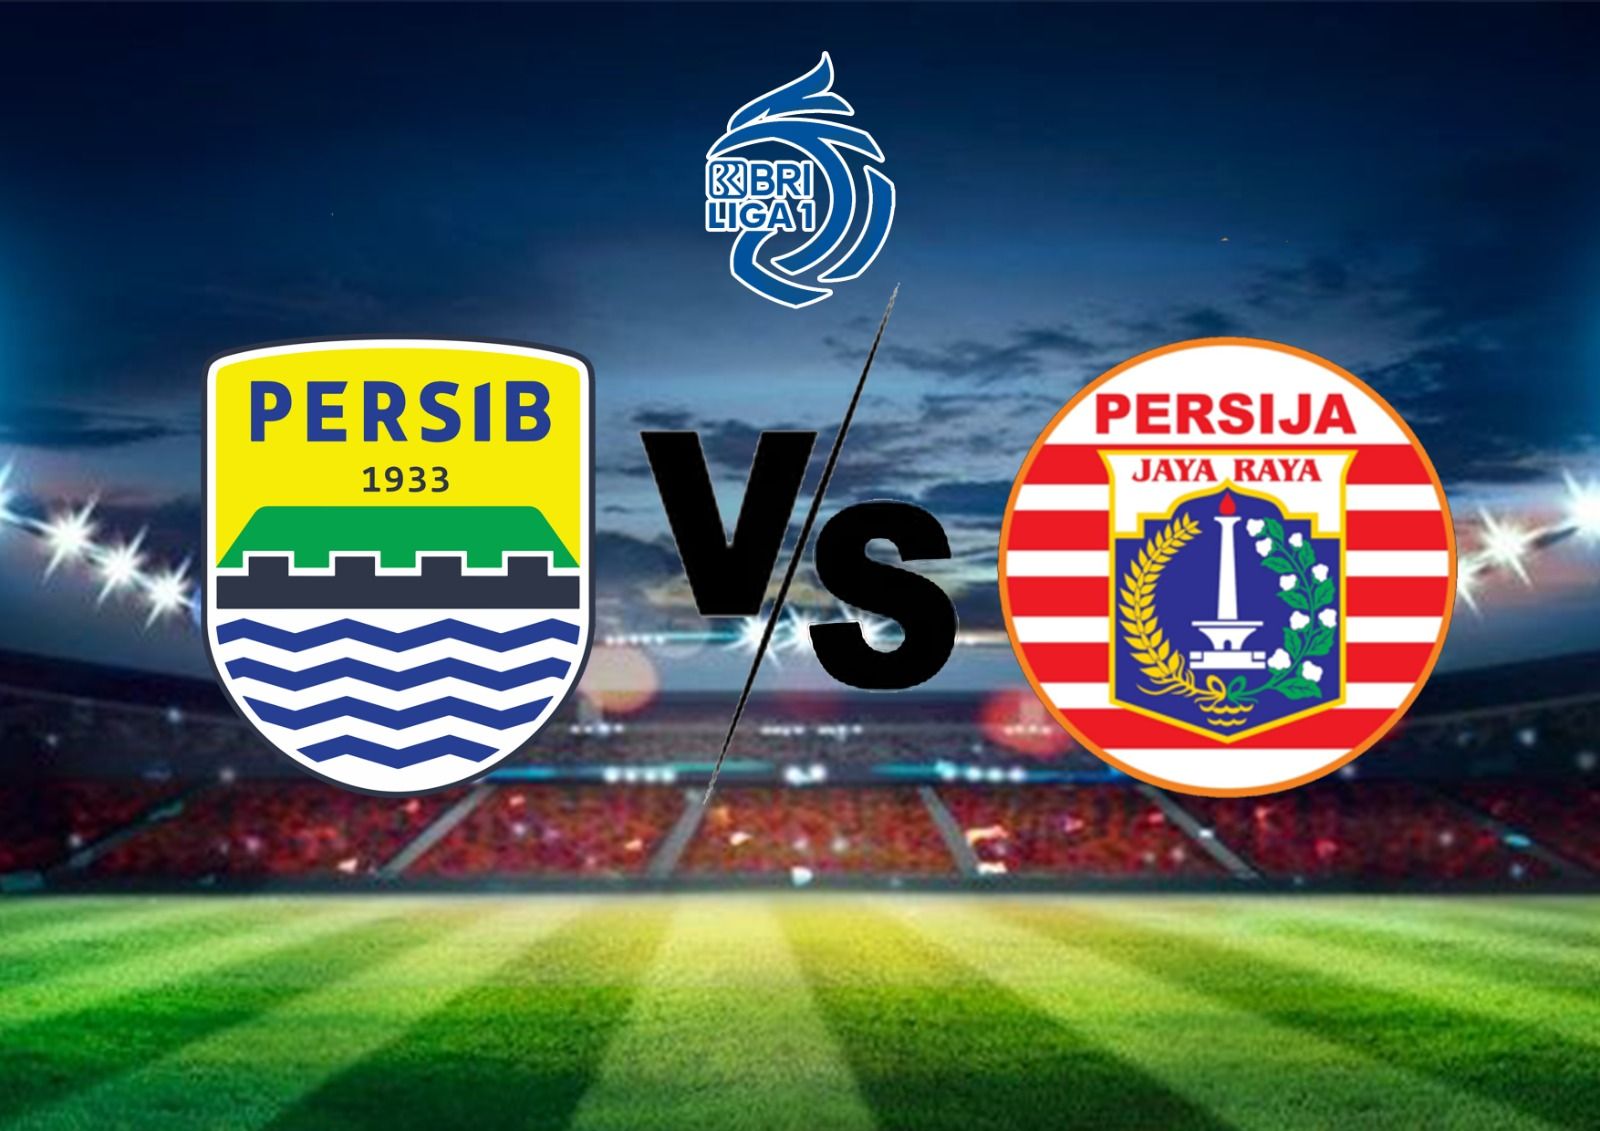 Laga antara Persib Bandung vs Persija Jakarta akan berlangsung pada hari ini Jumat, 31 Maret 2023 di Stadion Patriot Candrabhaga, Kota Bekasi Jawa Barat. 